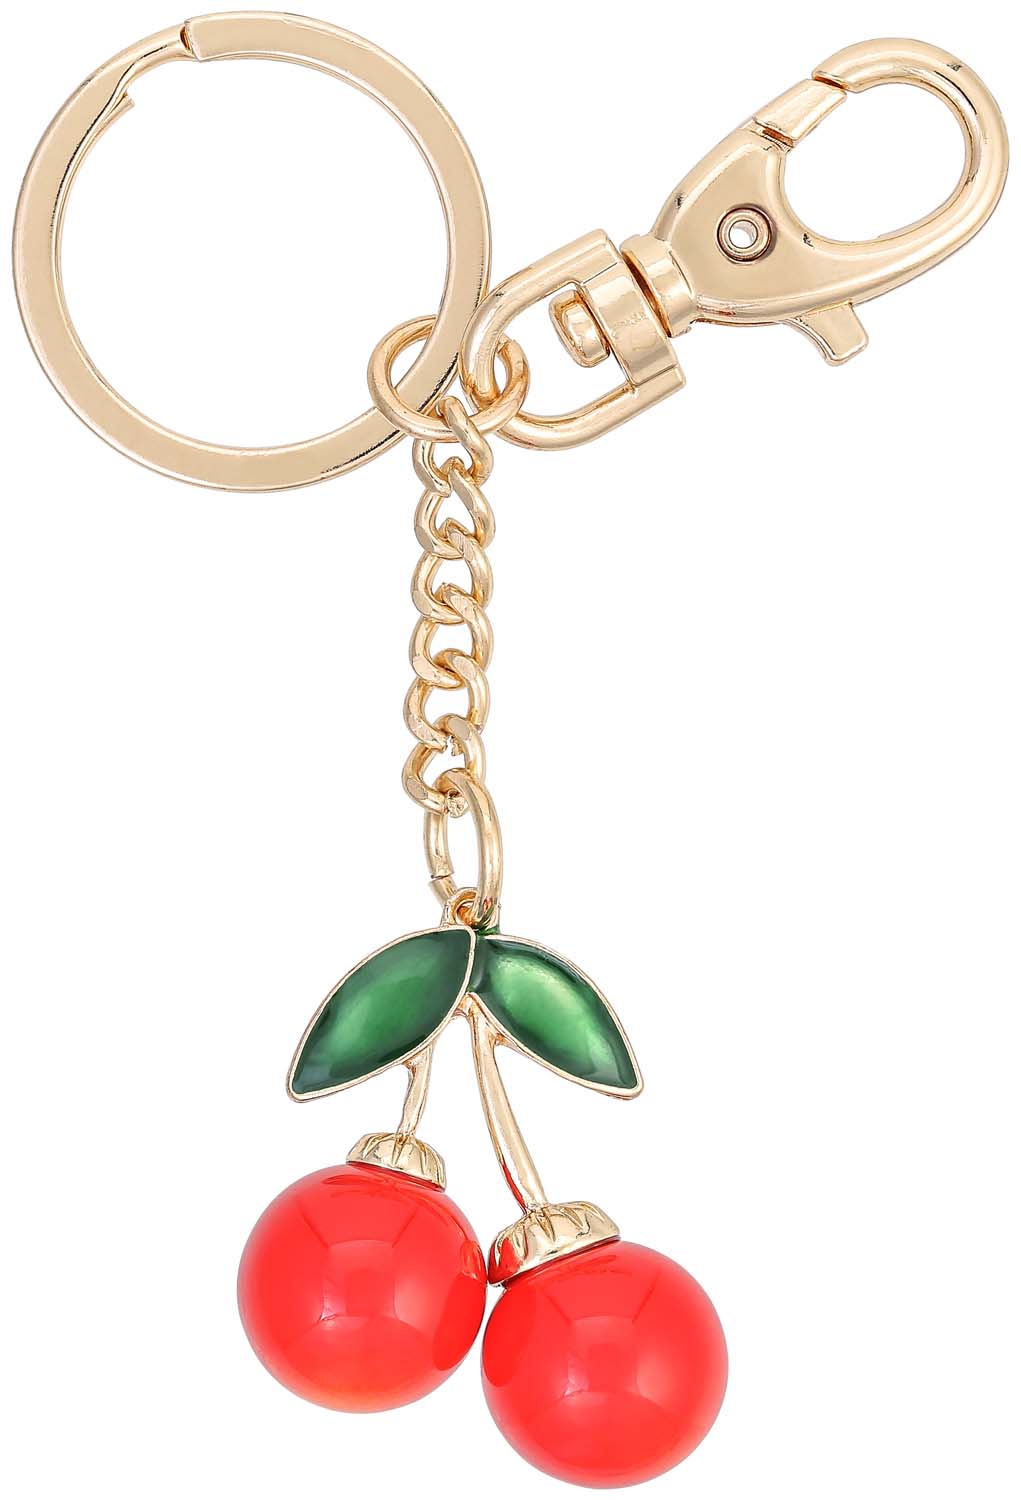 Schlüsselanhänger - Red Cherry